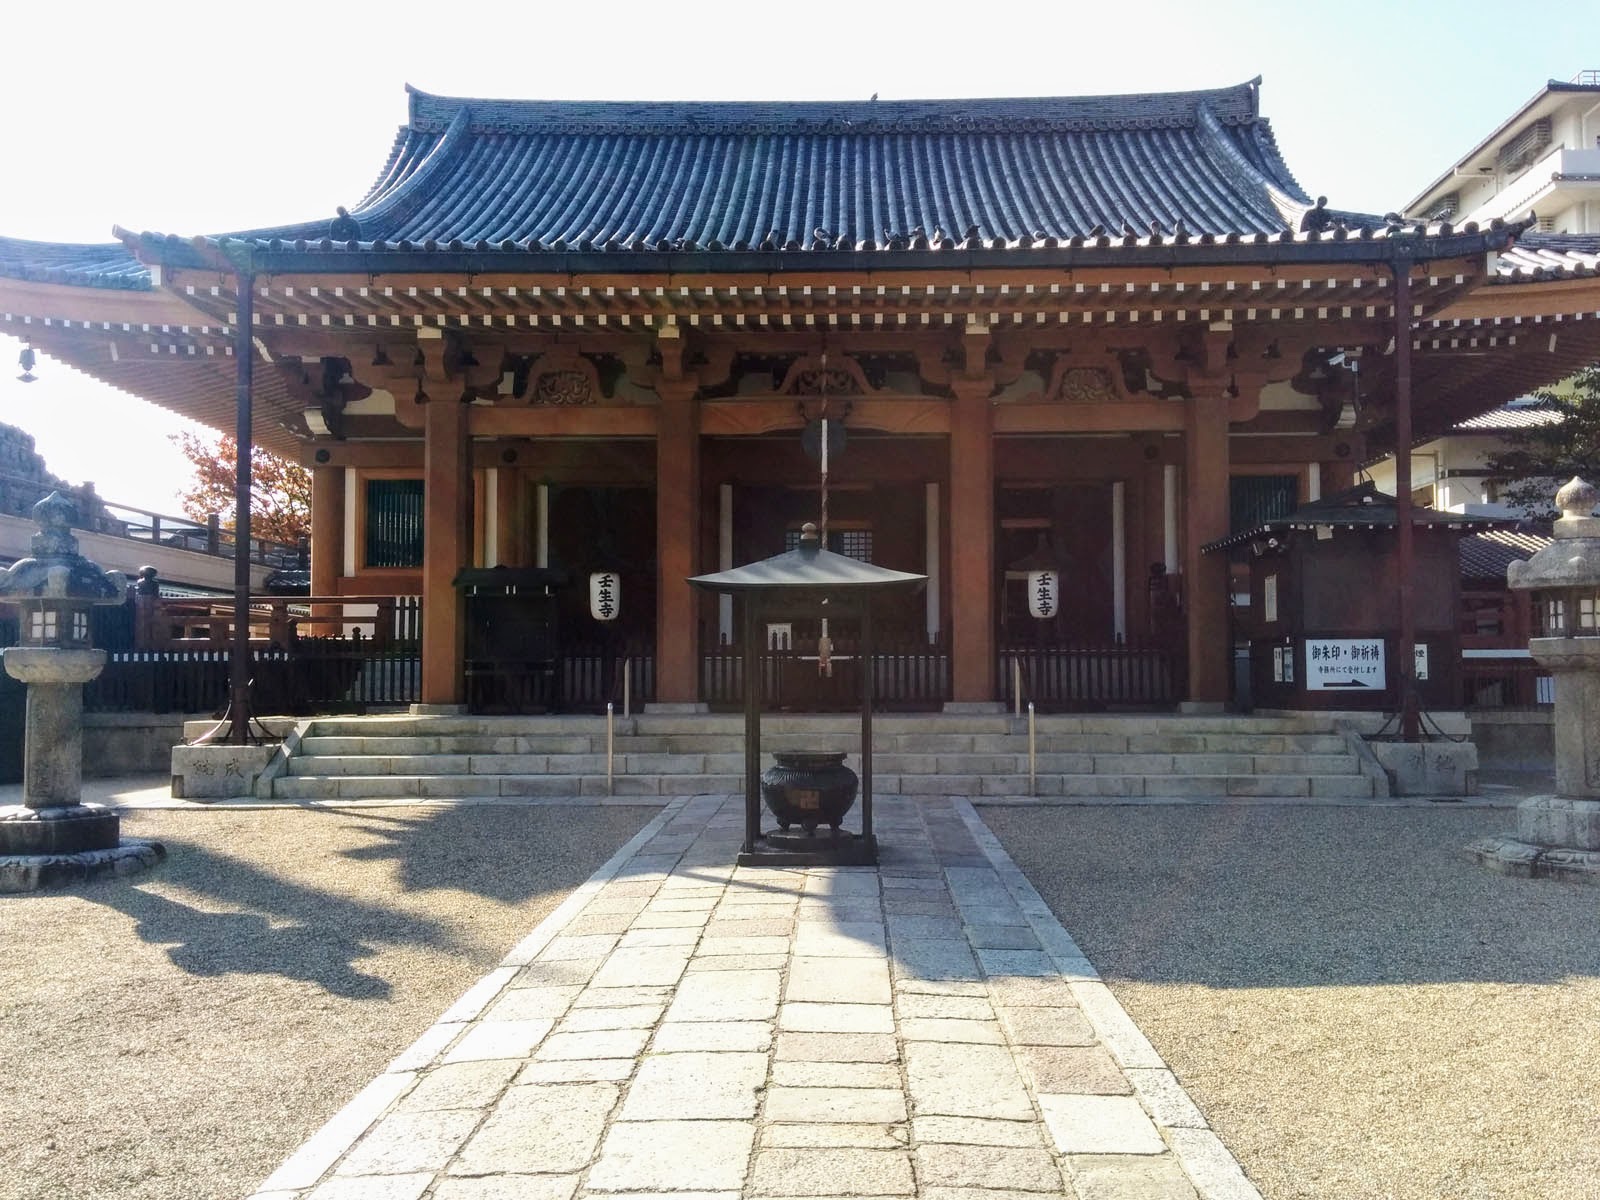 壬生寺 | 京都の観光地 - 京都観光ネット